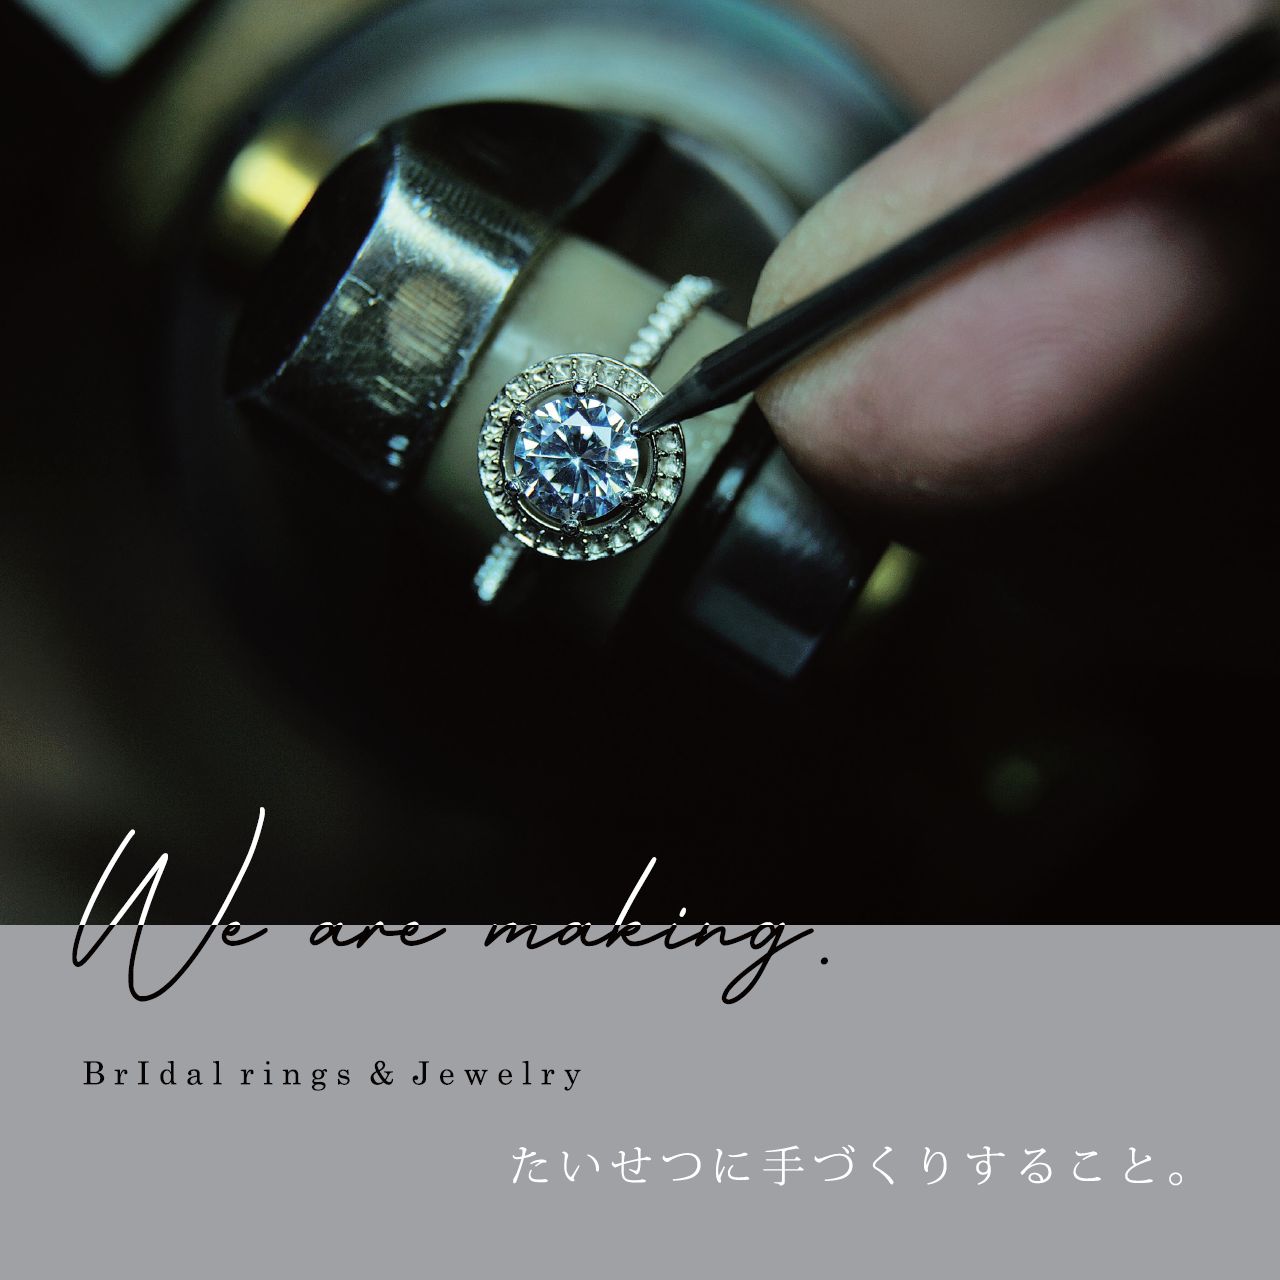 snow_jewelry_hiroshima_making